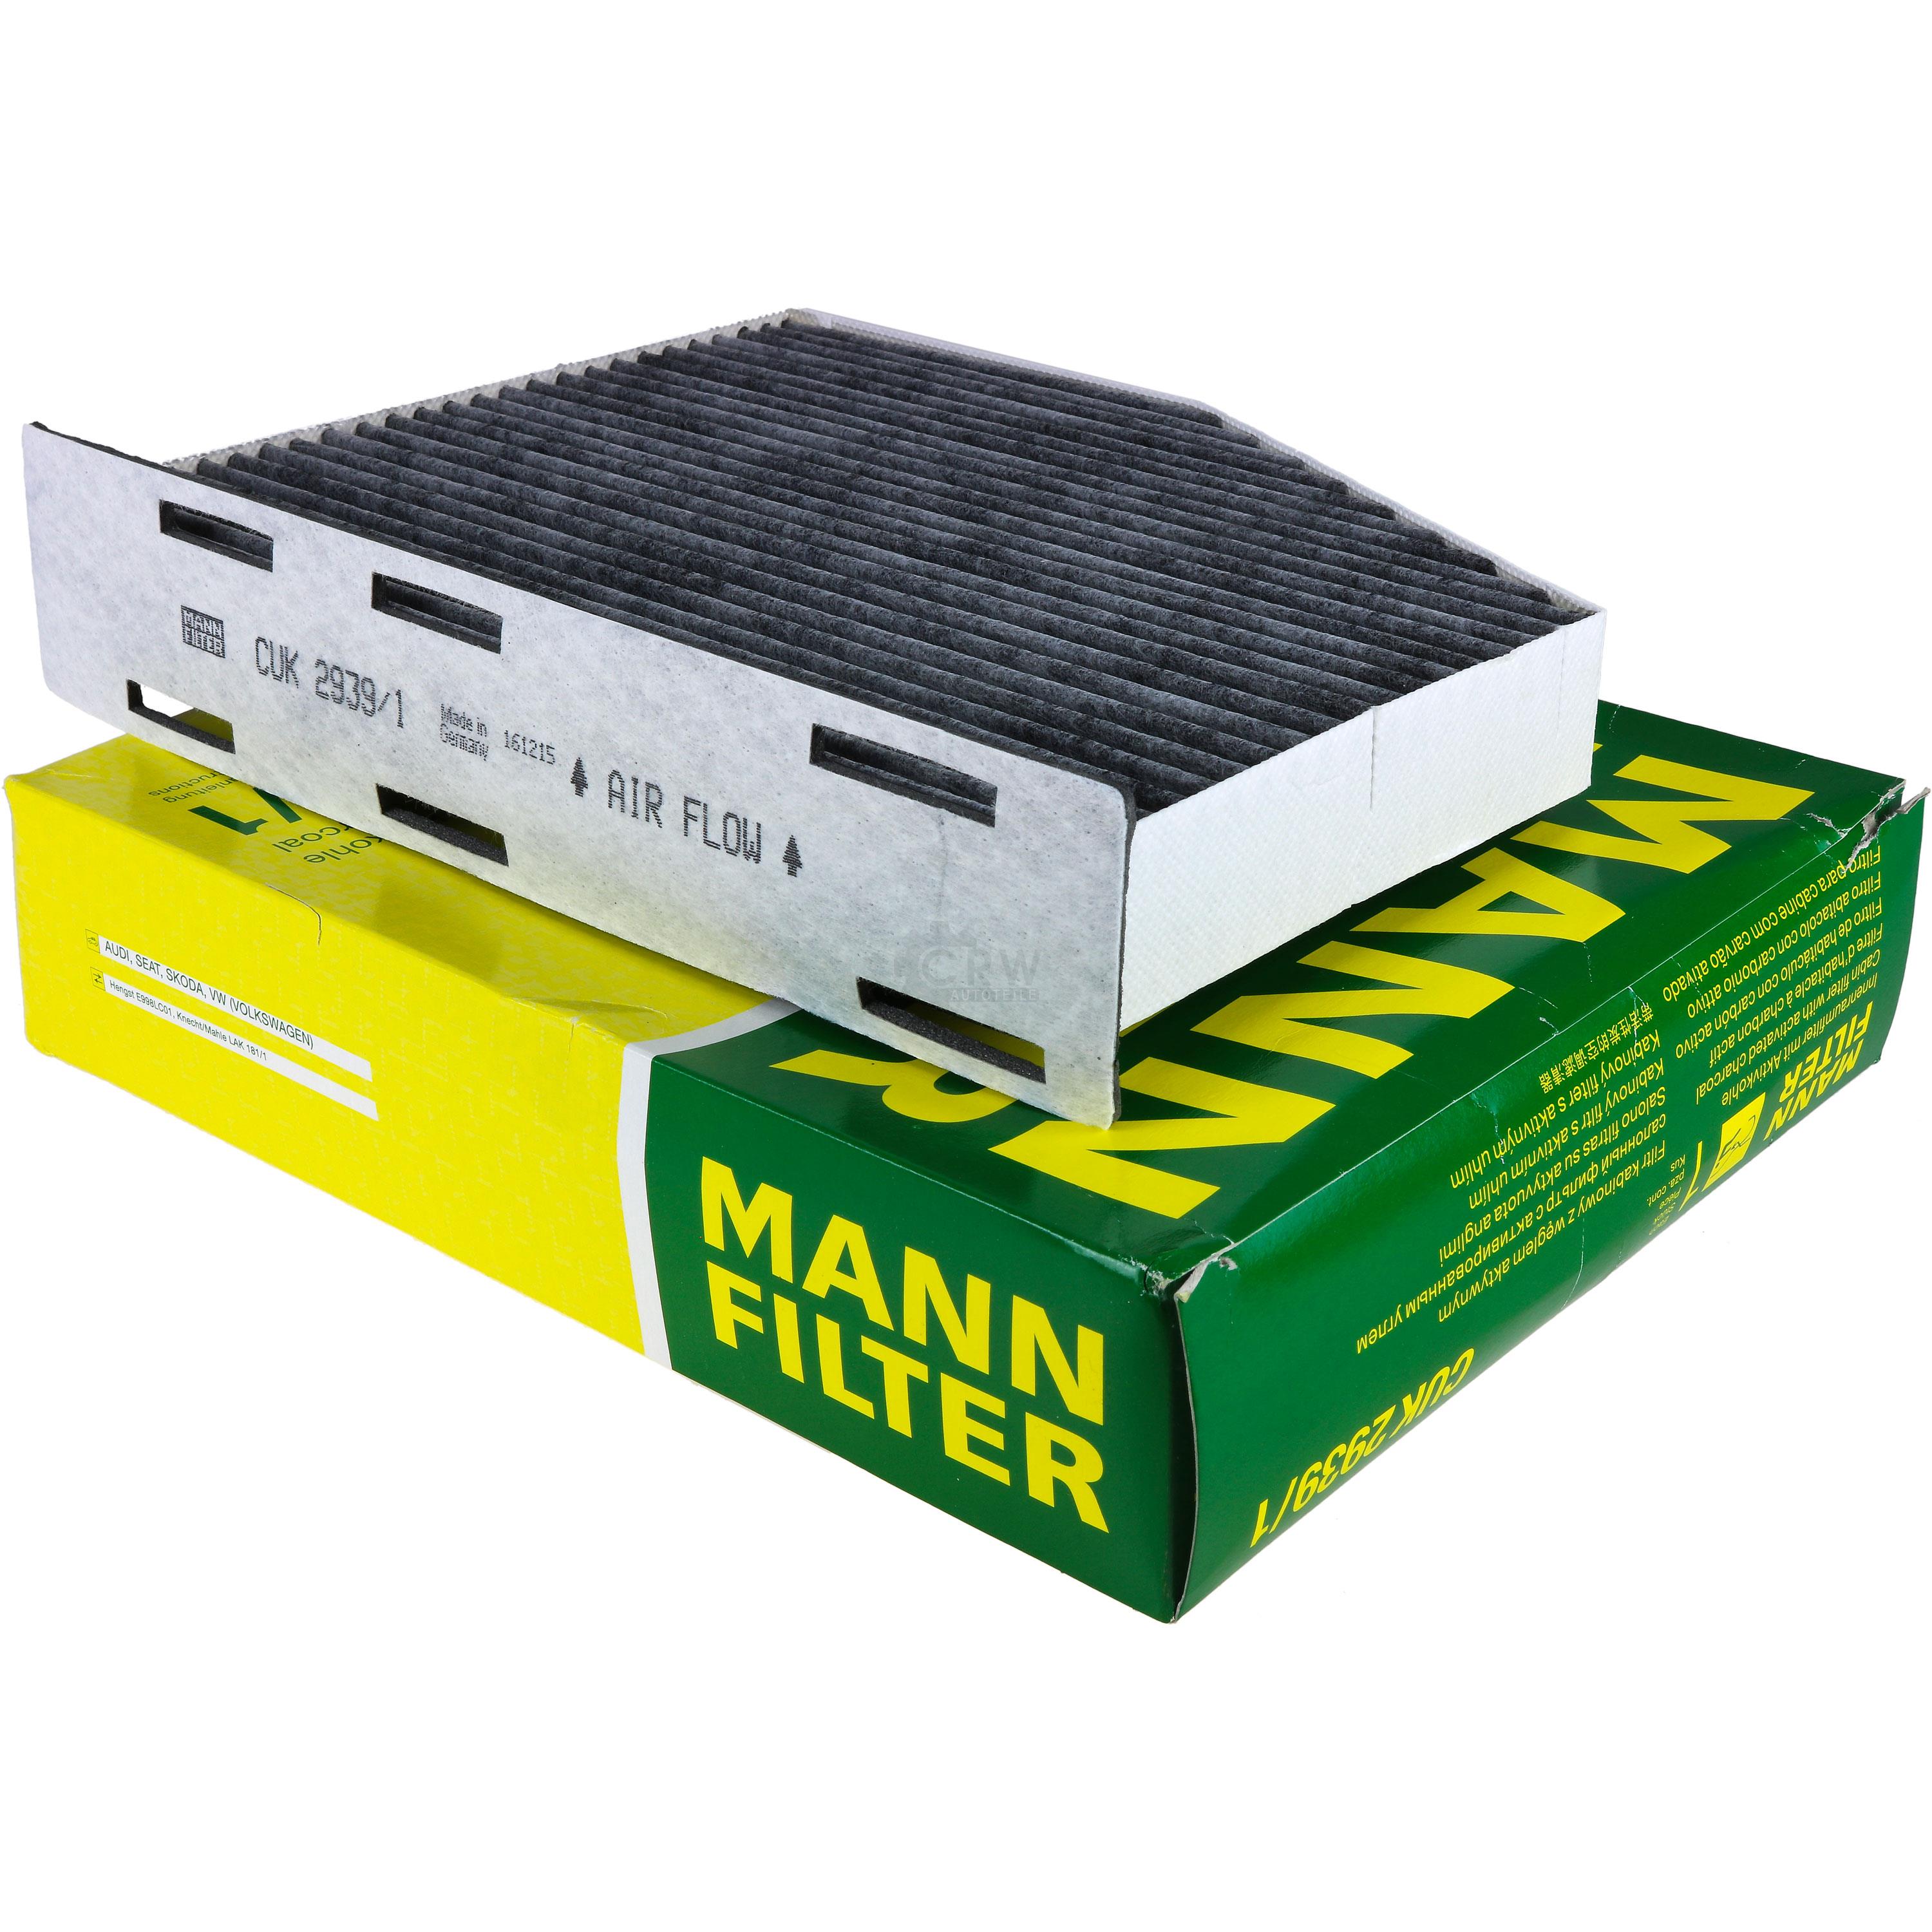 MANN-FILTER Innenraumfilter Pollenfilter Aktivkohle CUK 2939/1